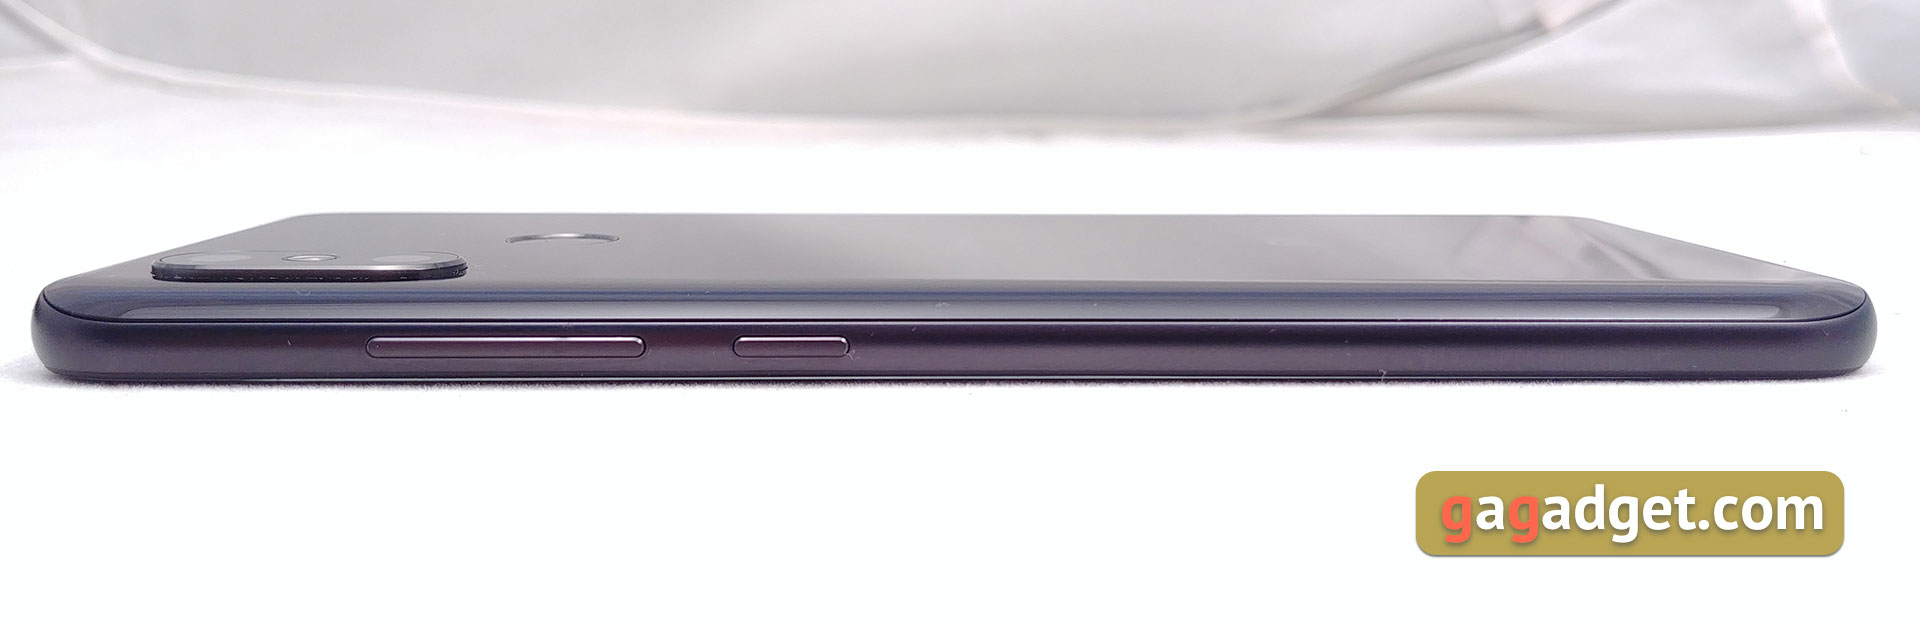 Обзор Xiaomi Mi 8: максимум мощности с приятным ценником-11